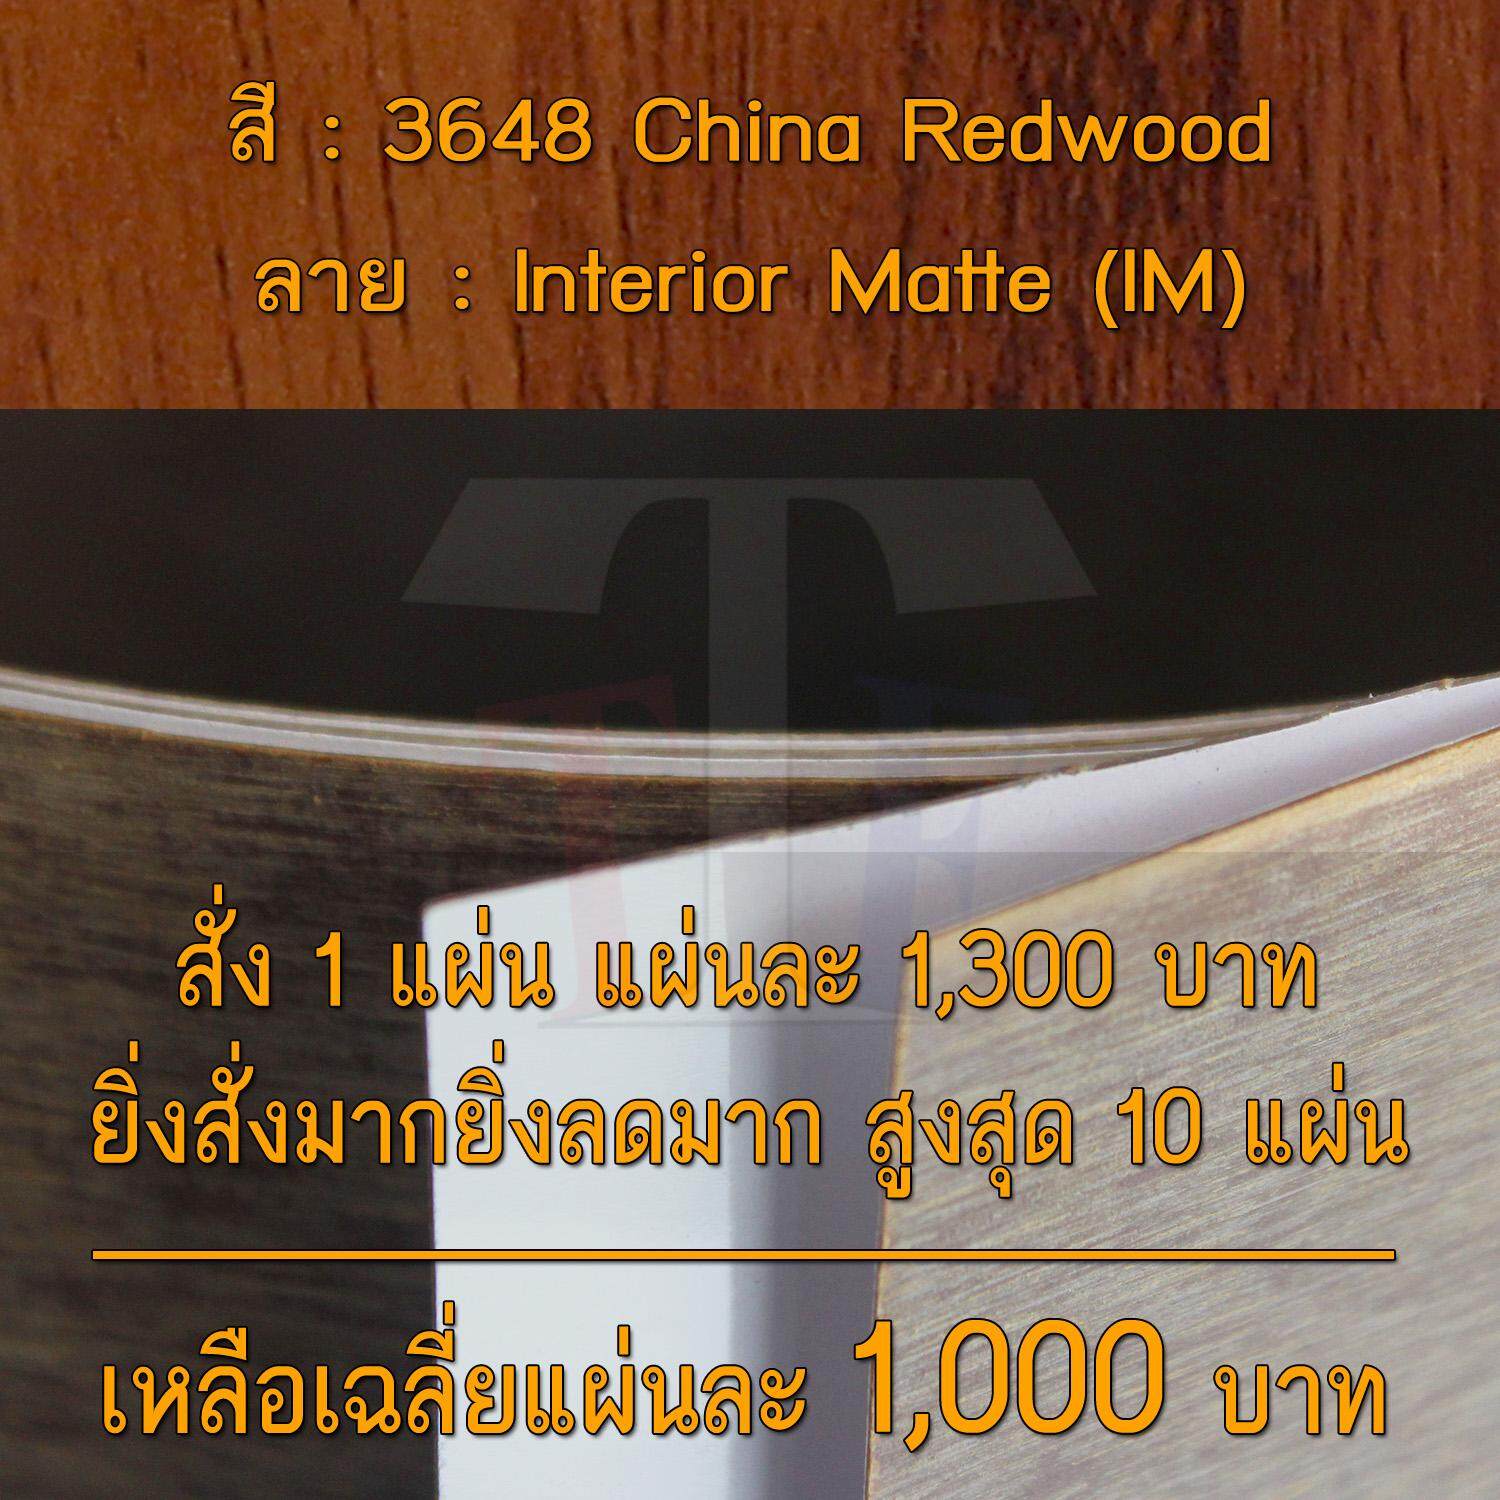 แผ่นโฟเมก้า แผ่นลามิเนต ยี่ห้อ TD Board ลายไม้ รหัส 3648 China Redwood พื้นผิวลาย Interior Matte (IM) ขนาด 1220 x 2440 มม. หนา 0.70 มม. ใช้สำหรับงานตกแต่งภายใน งานปิดผิวเฟอร์นิเจอร์ ผนัง และอื่นๆ เพื่อเพิ่มความสวยงาม formica laminate 3648IM